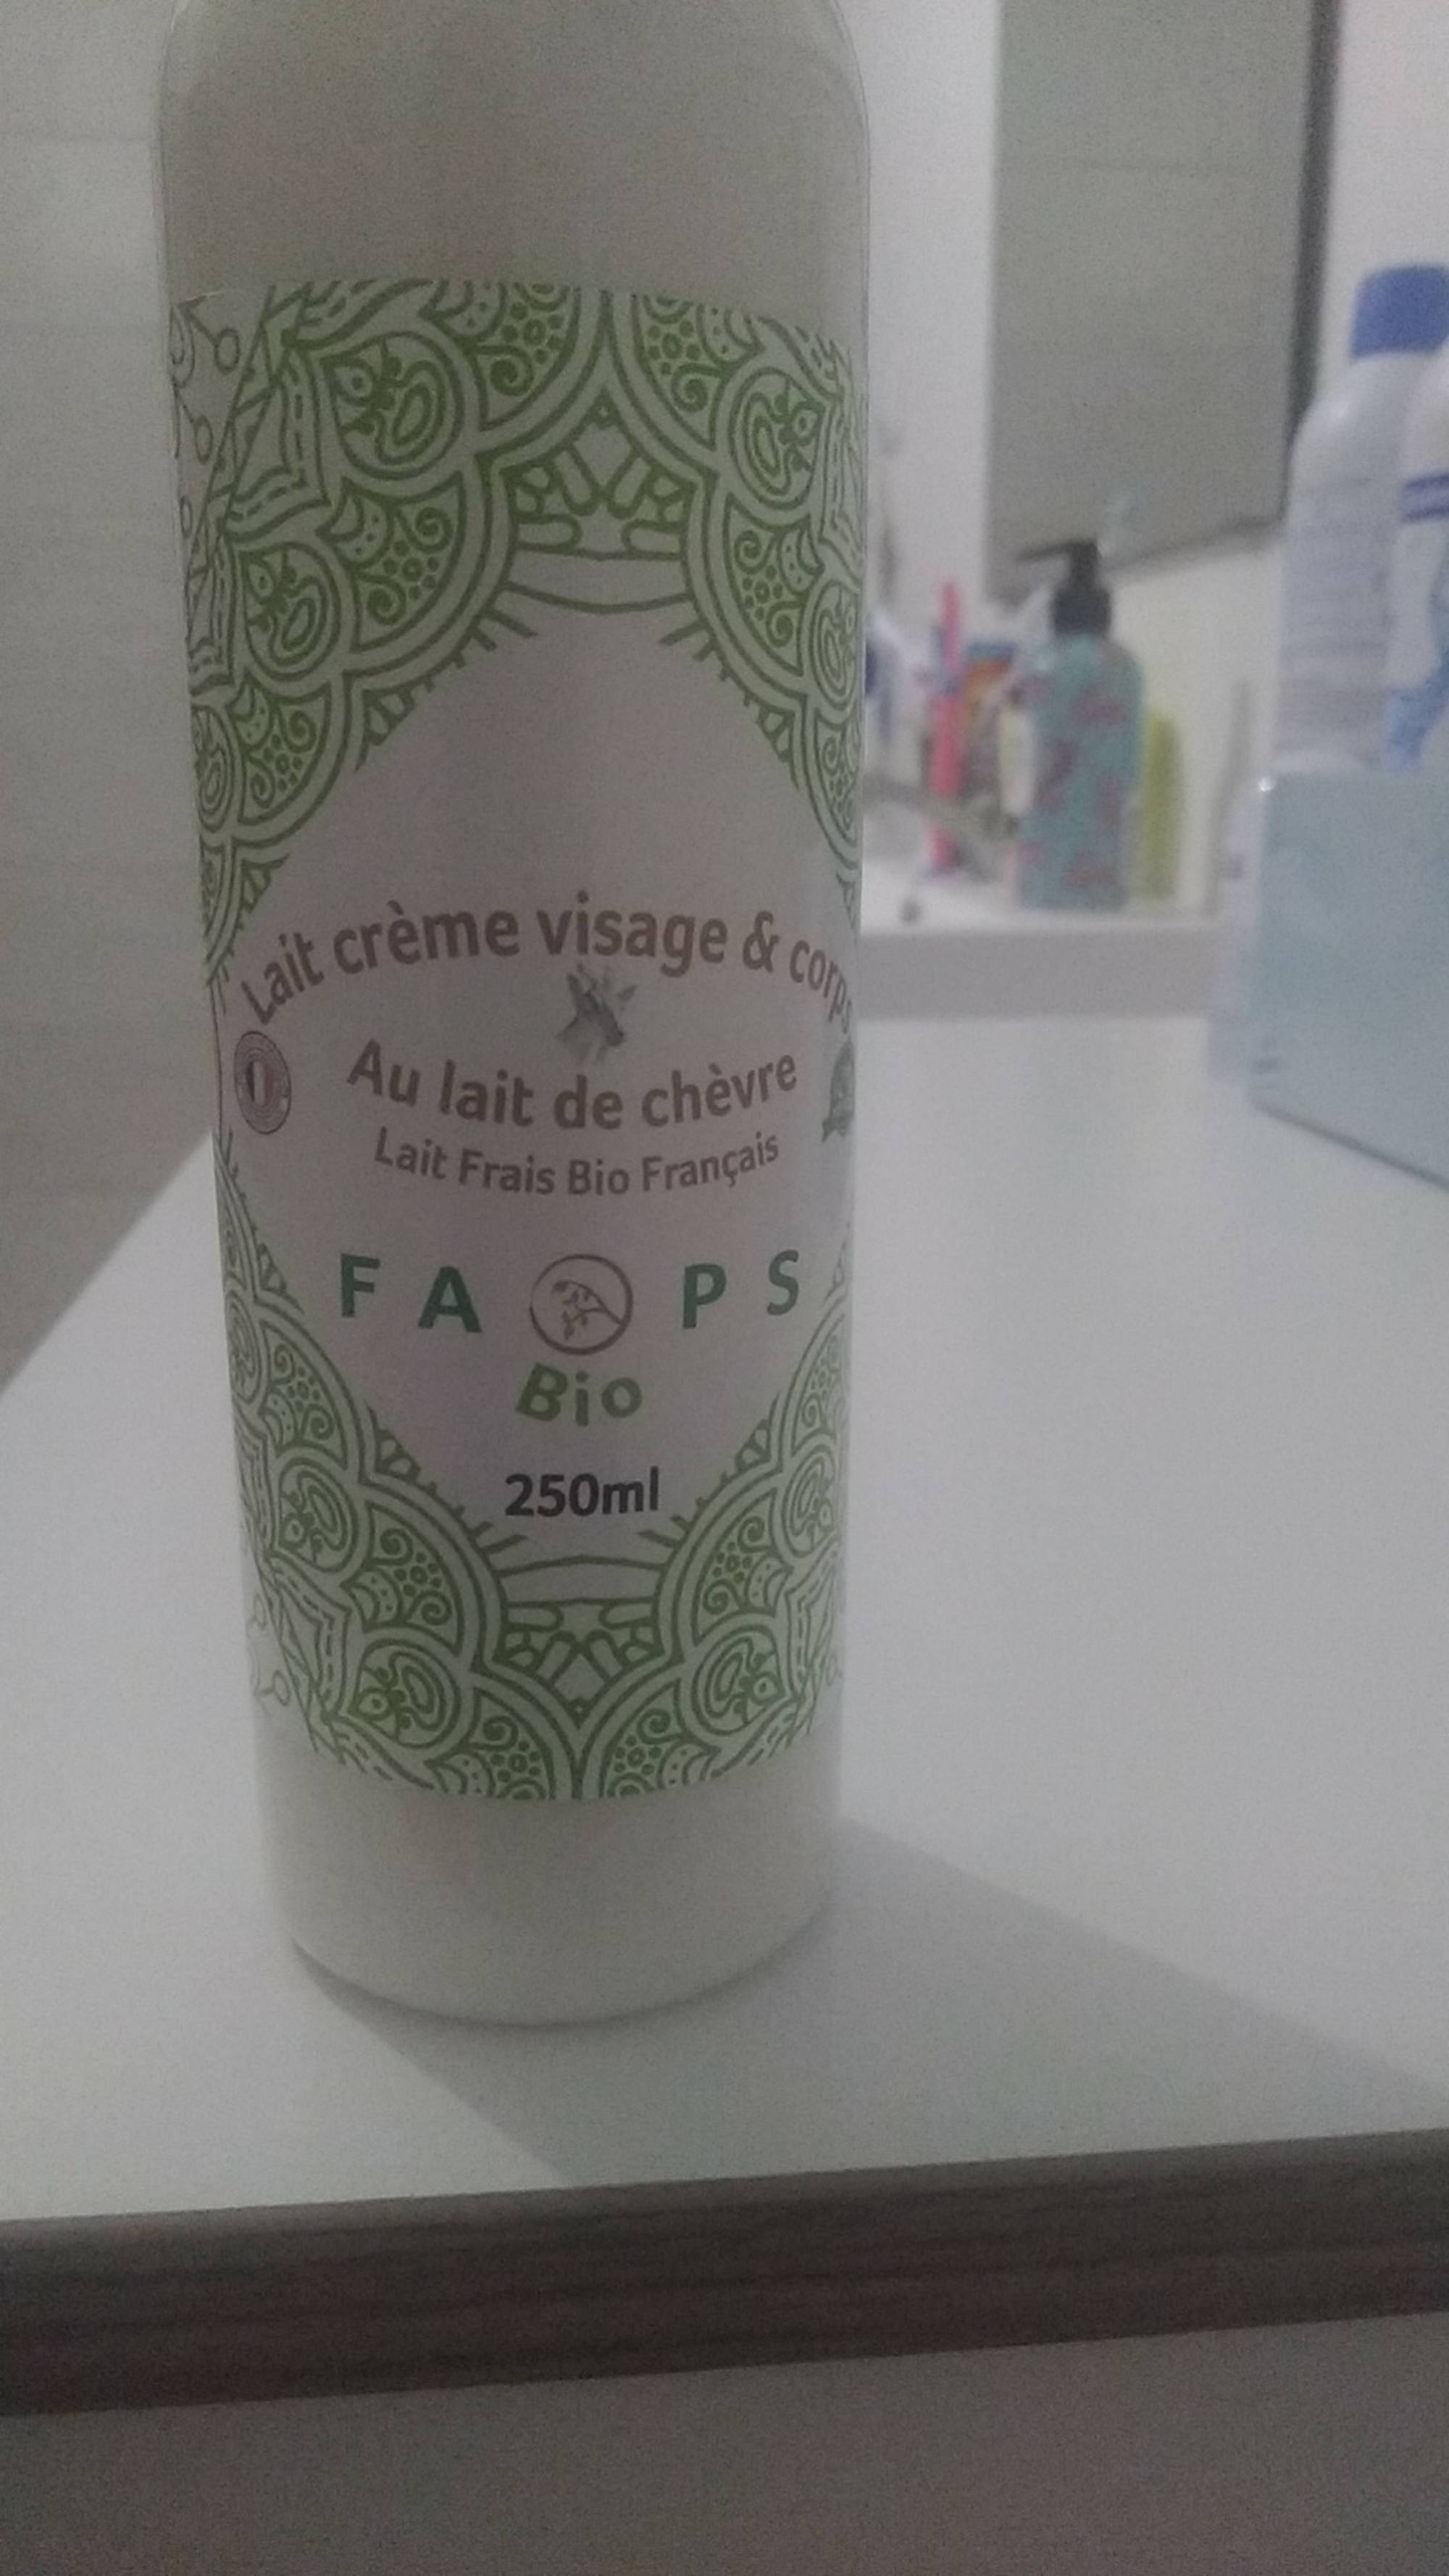 FAOPS BIO - Lait crème visage et corps au lait de chèvre